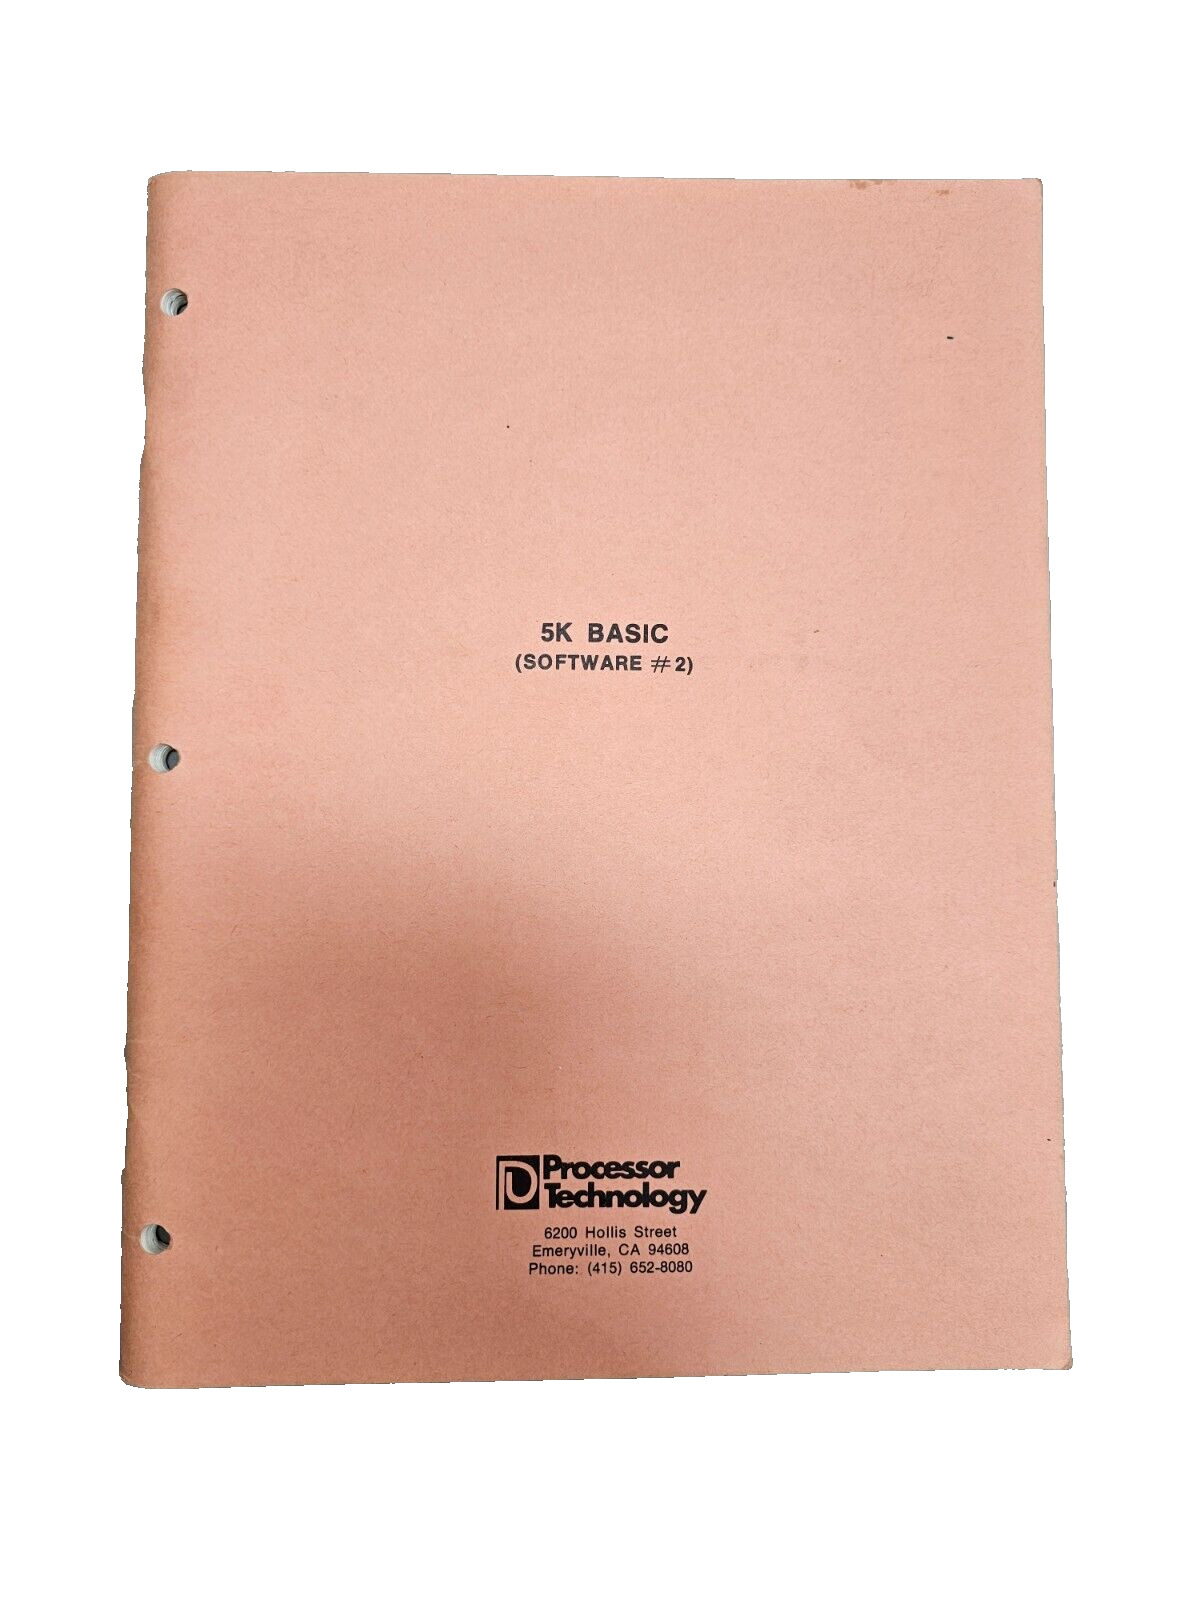 Vintage 1976 Processor Technology 5K Basic (Software #2) Source Listing ALS-8